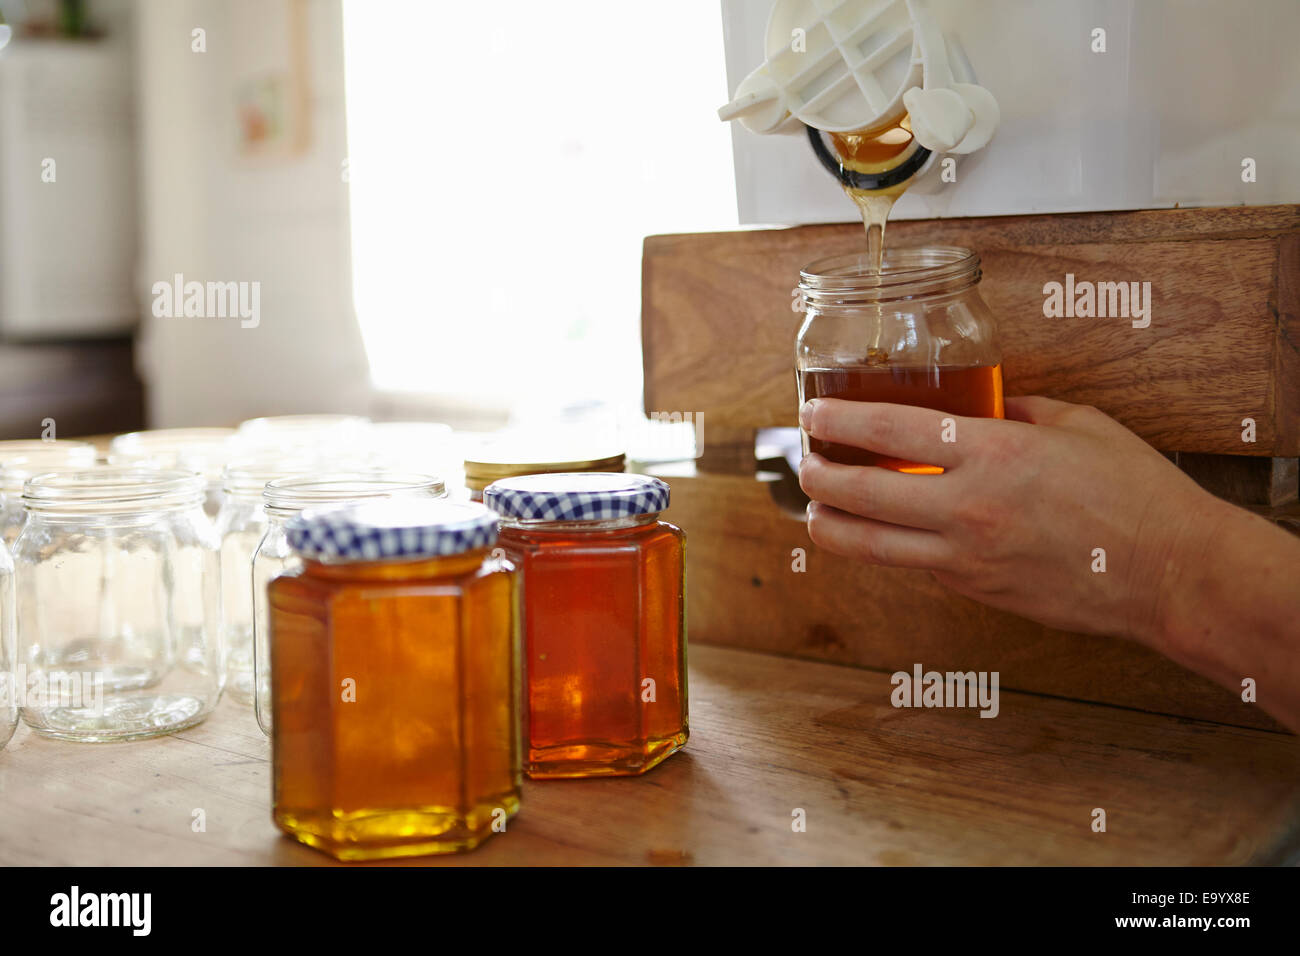 Mano de apicultor femenino en cocina embotellamiento miel filtrada de colmena Foto de stock